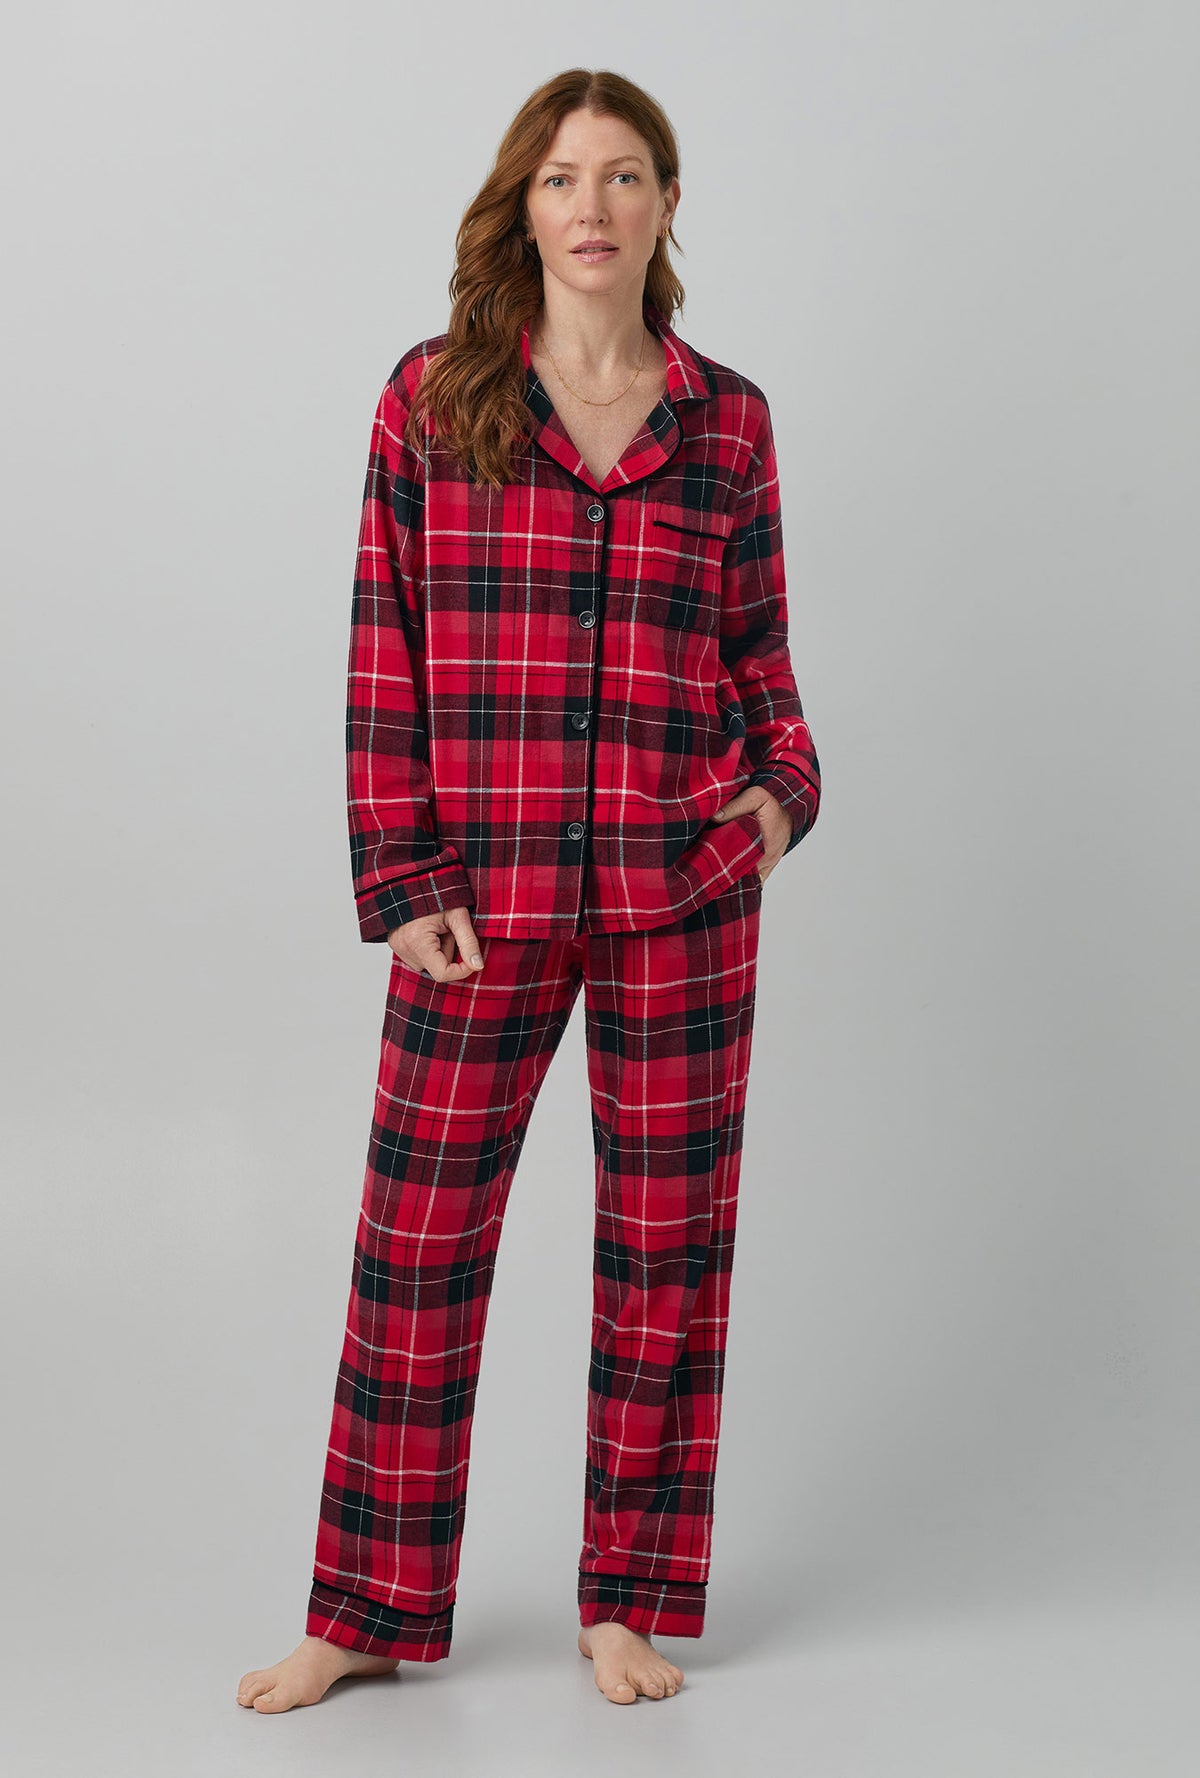 Pajamas Homewear Thermal pyjamas Unisex Pajamas Adult Flannel